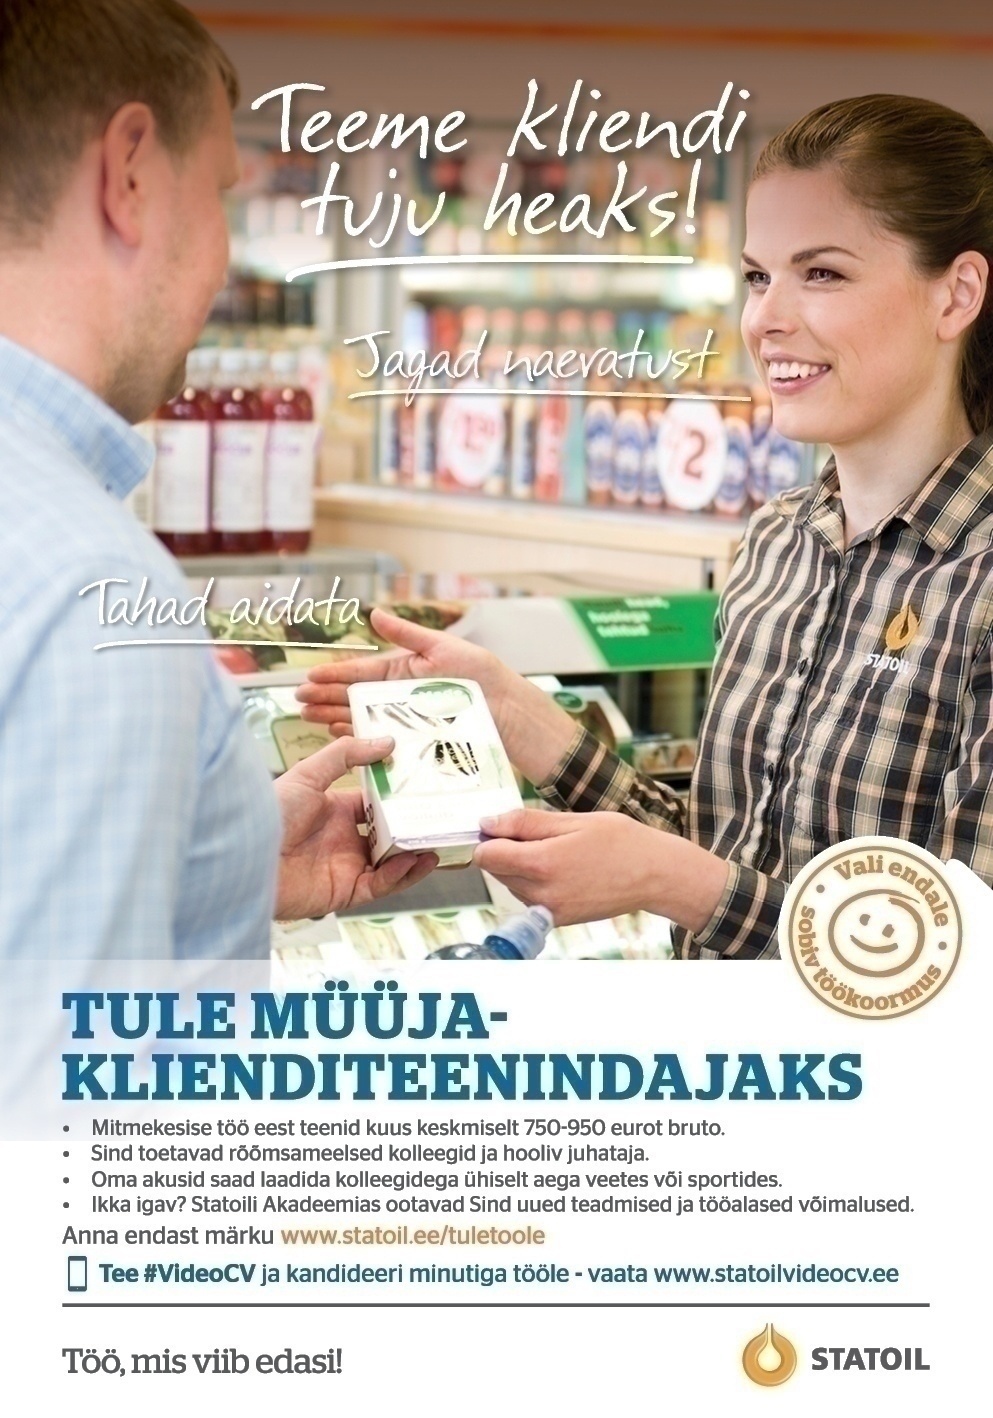 Circle K Eesti AS Müüja-klienditeenindaja Tallinna Võidujooksu ja Mustakivi teenindusjaama